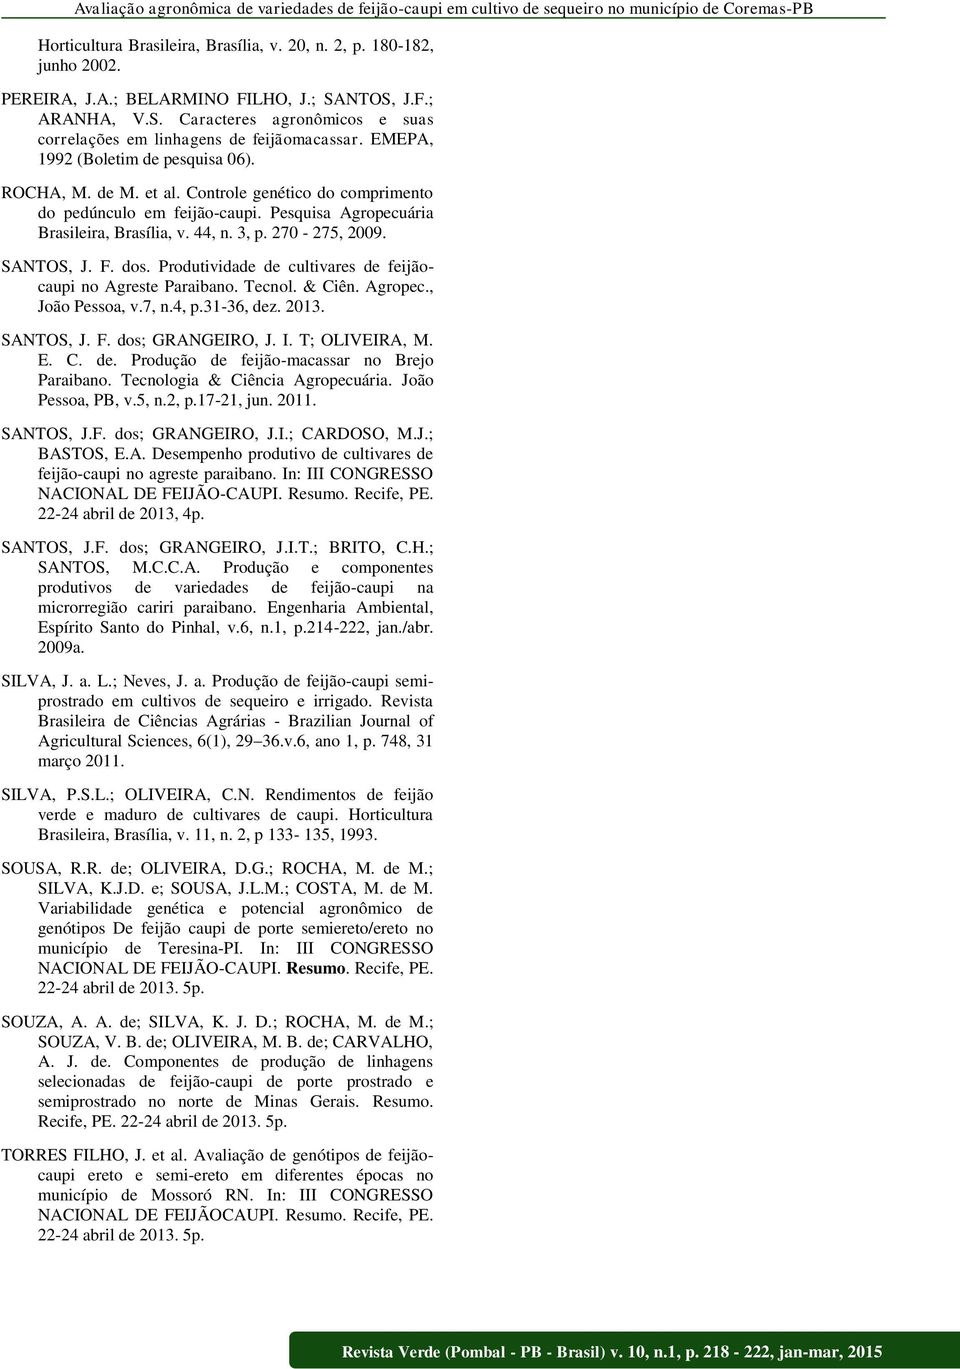 Controle genético do comprimento do pedúnculo em feijão-caupi. Pesquisa Agropecuária Brasileira, Brasília, v. 44, n. 3, p. 270-275, 2009. SANTOS, J. F. dos.